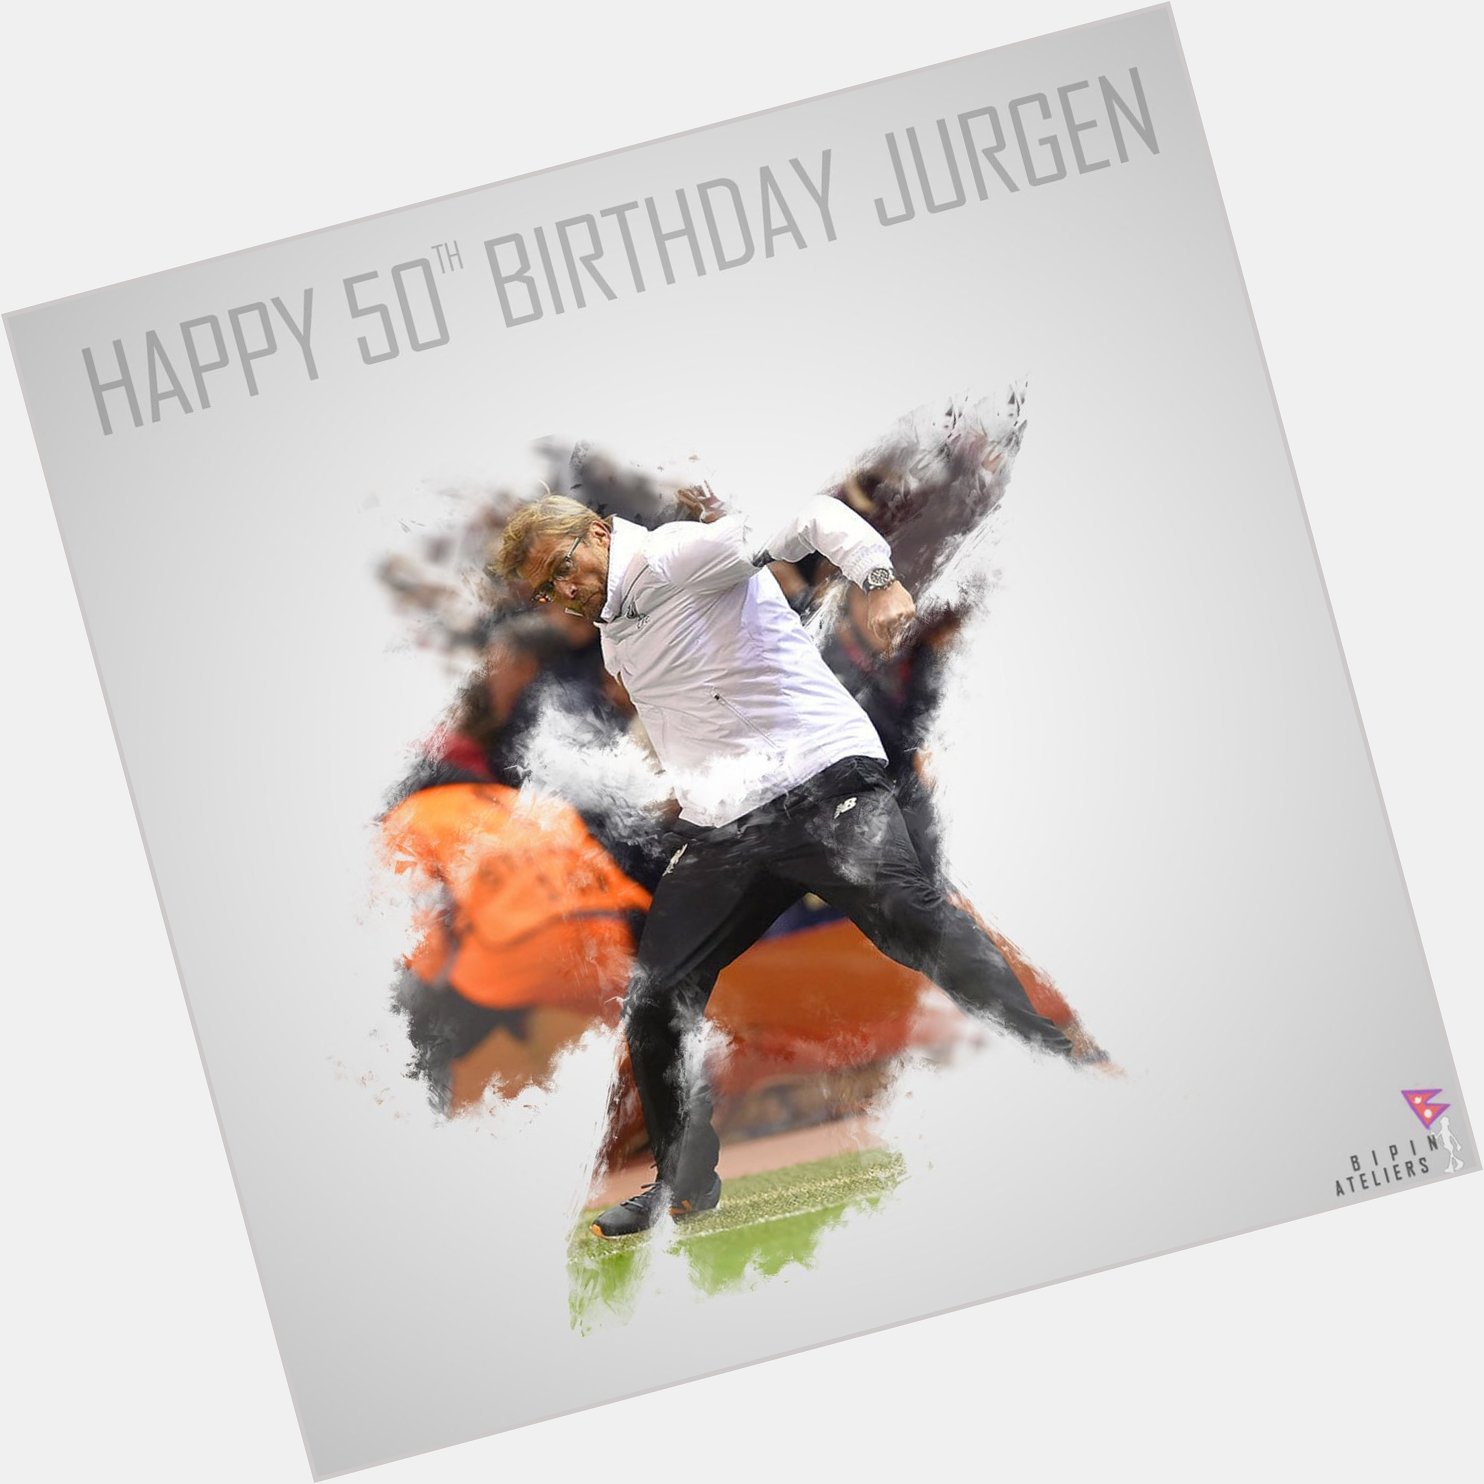 Boss!
Happy Birthday Jurgen Klopp 